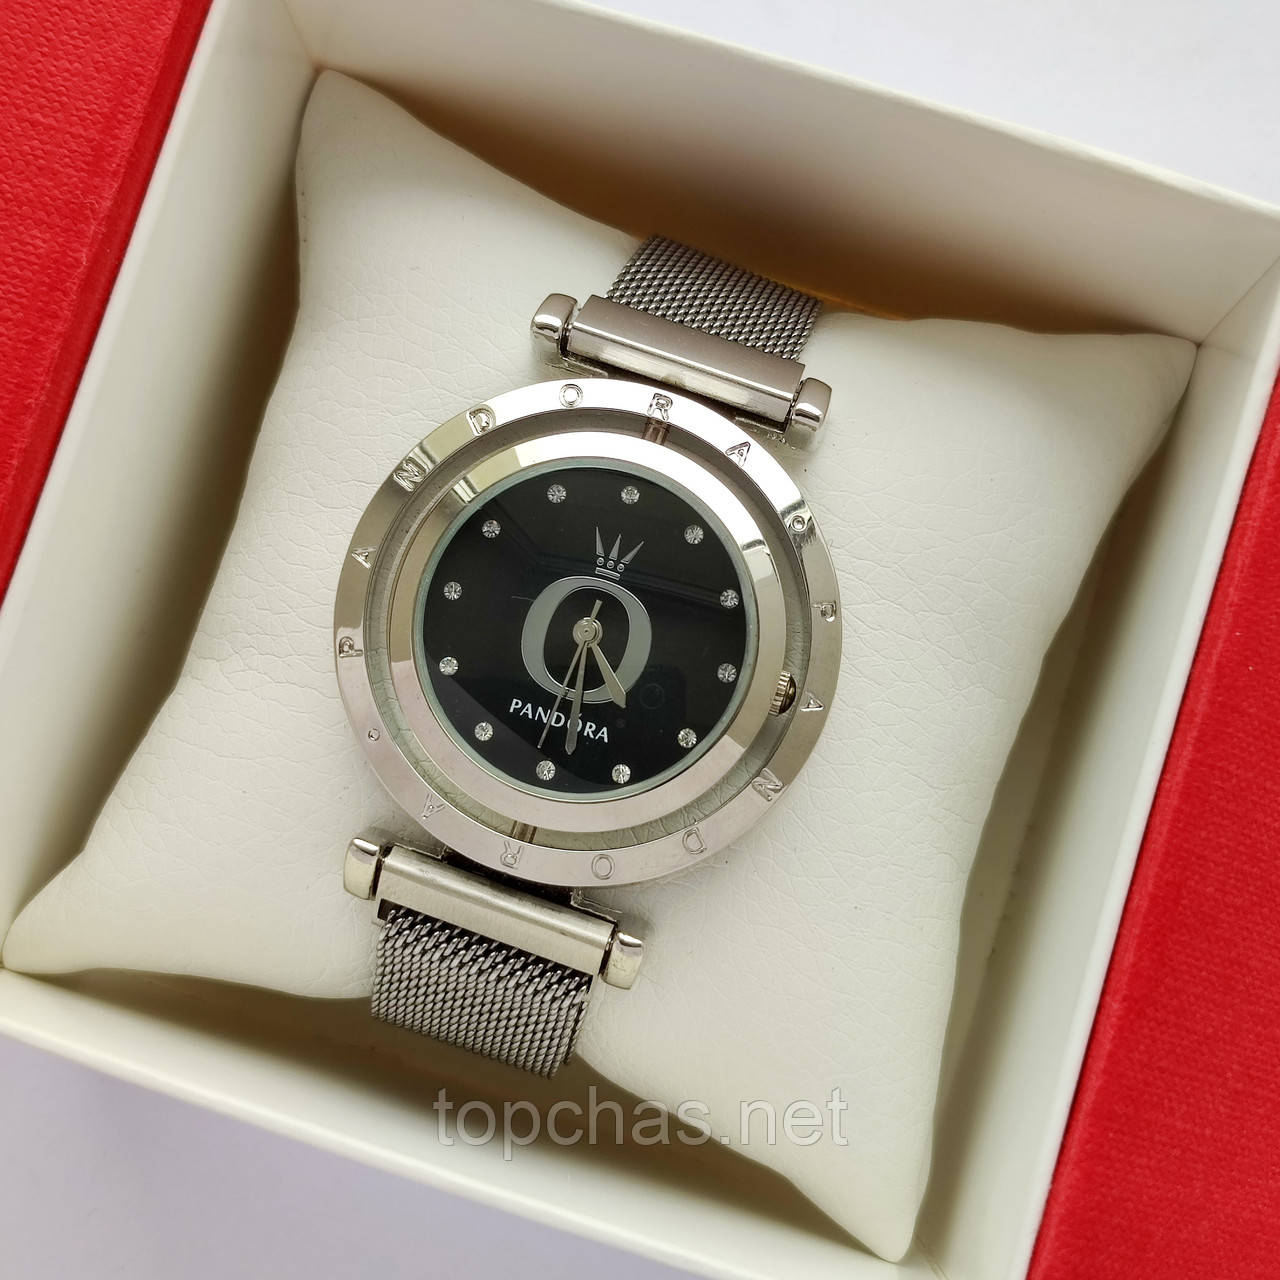 Сріблястий жіночий годинник Pandora (Пандора) з чорним циферблатом що обертається, магнітна застібка - код 2363b